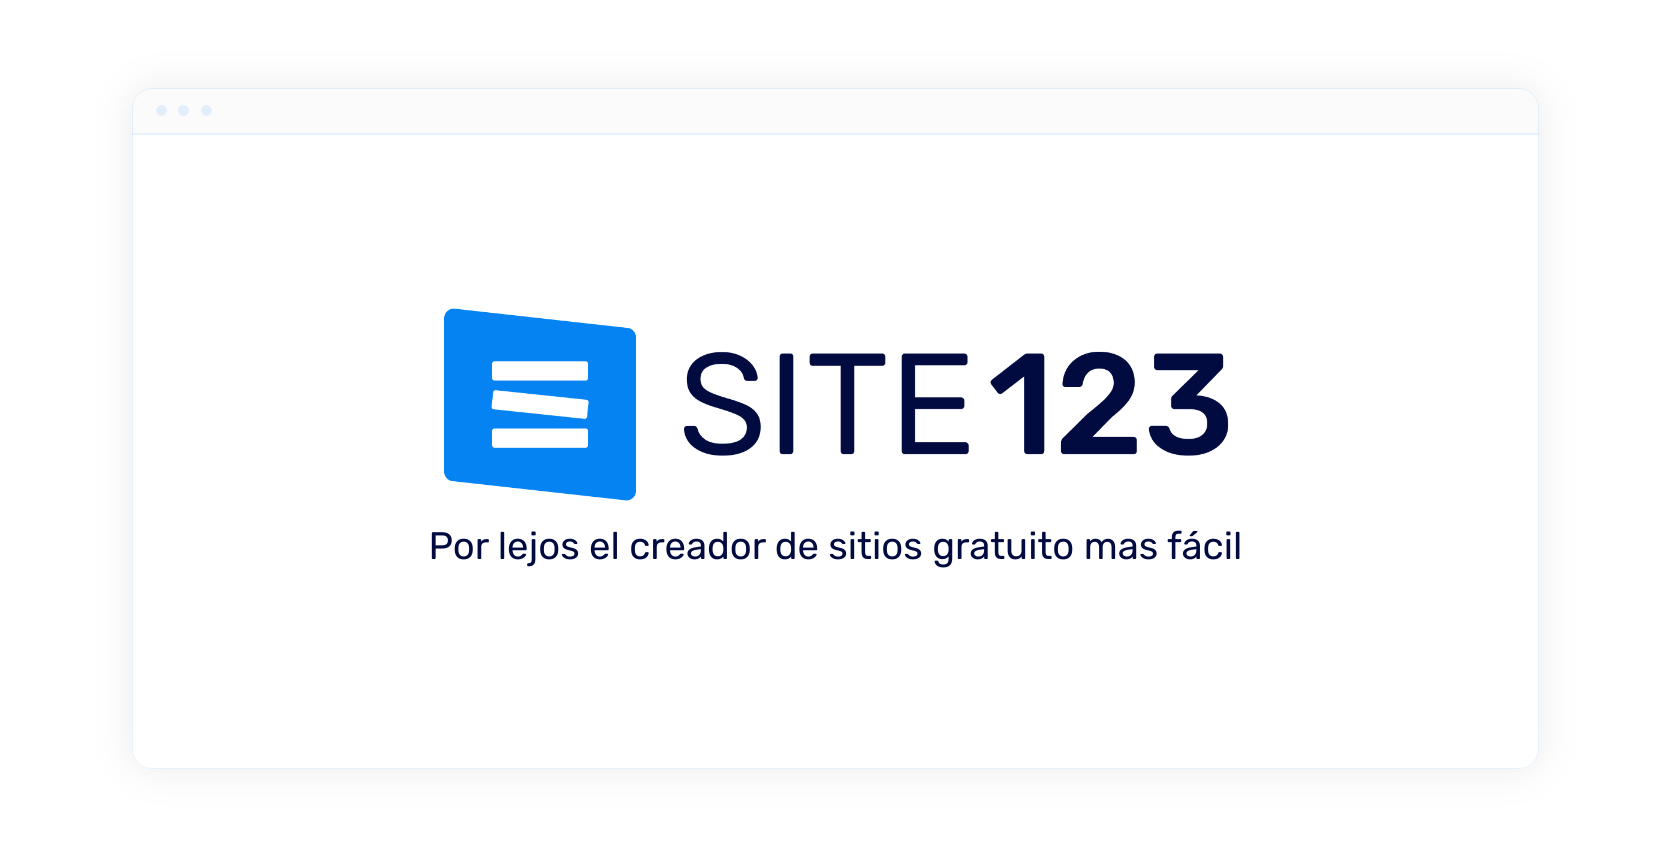 Opiniones SITE123: Crear Sitios Web Fáciles y Eficientes - Appvizer